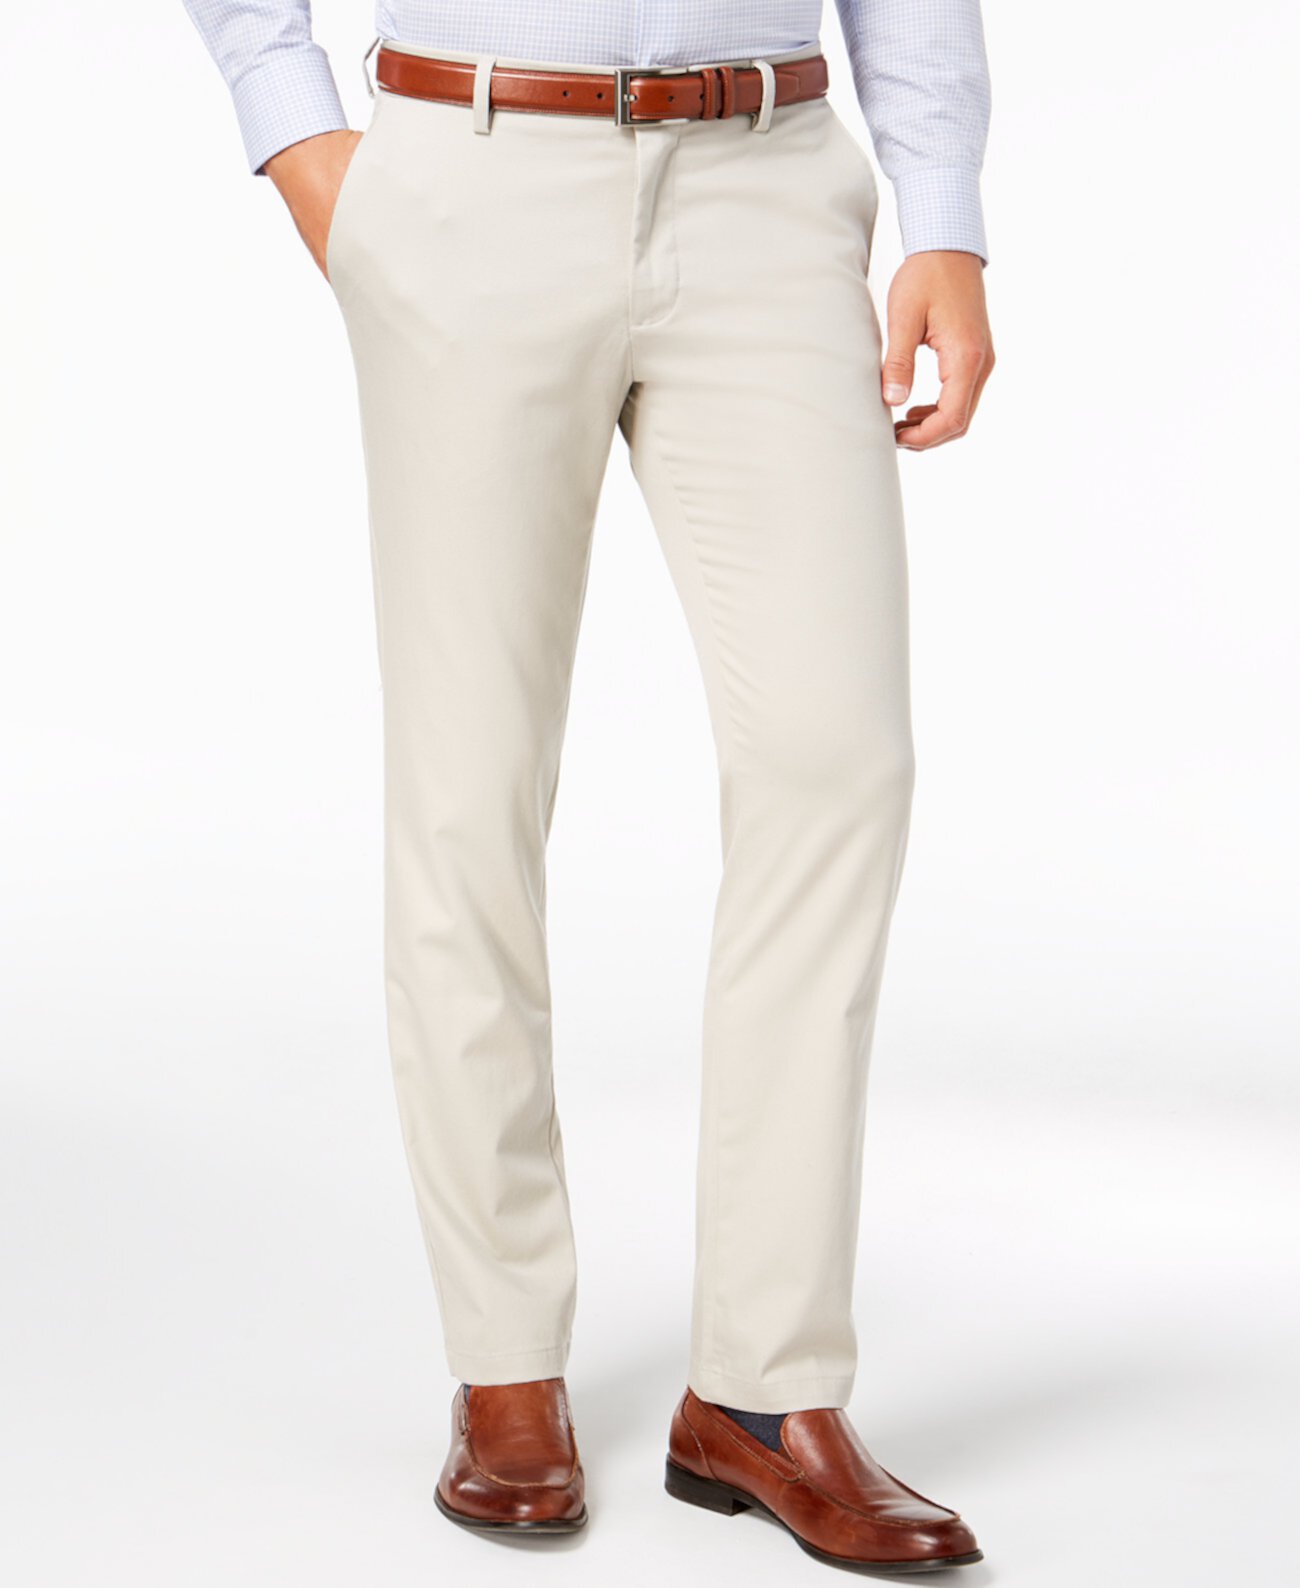 Мужские приталенные брюки цвета хаки из эластичного хлопка Signature Lux из хлопка Dockers